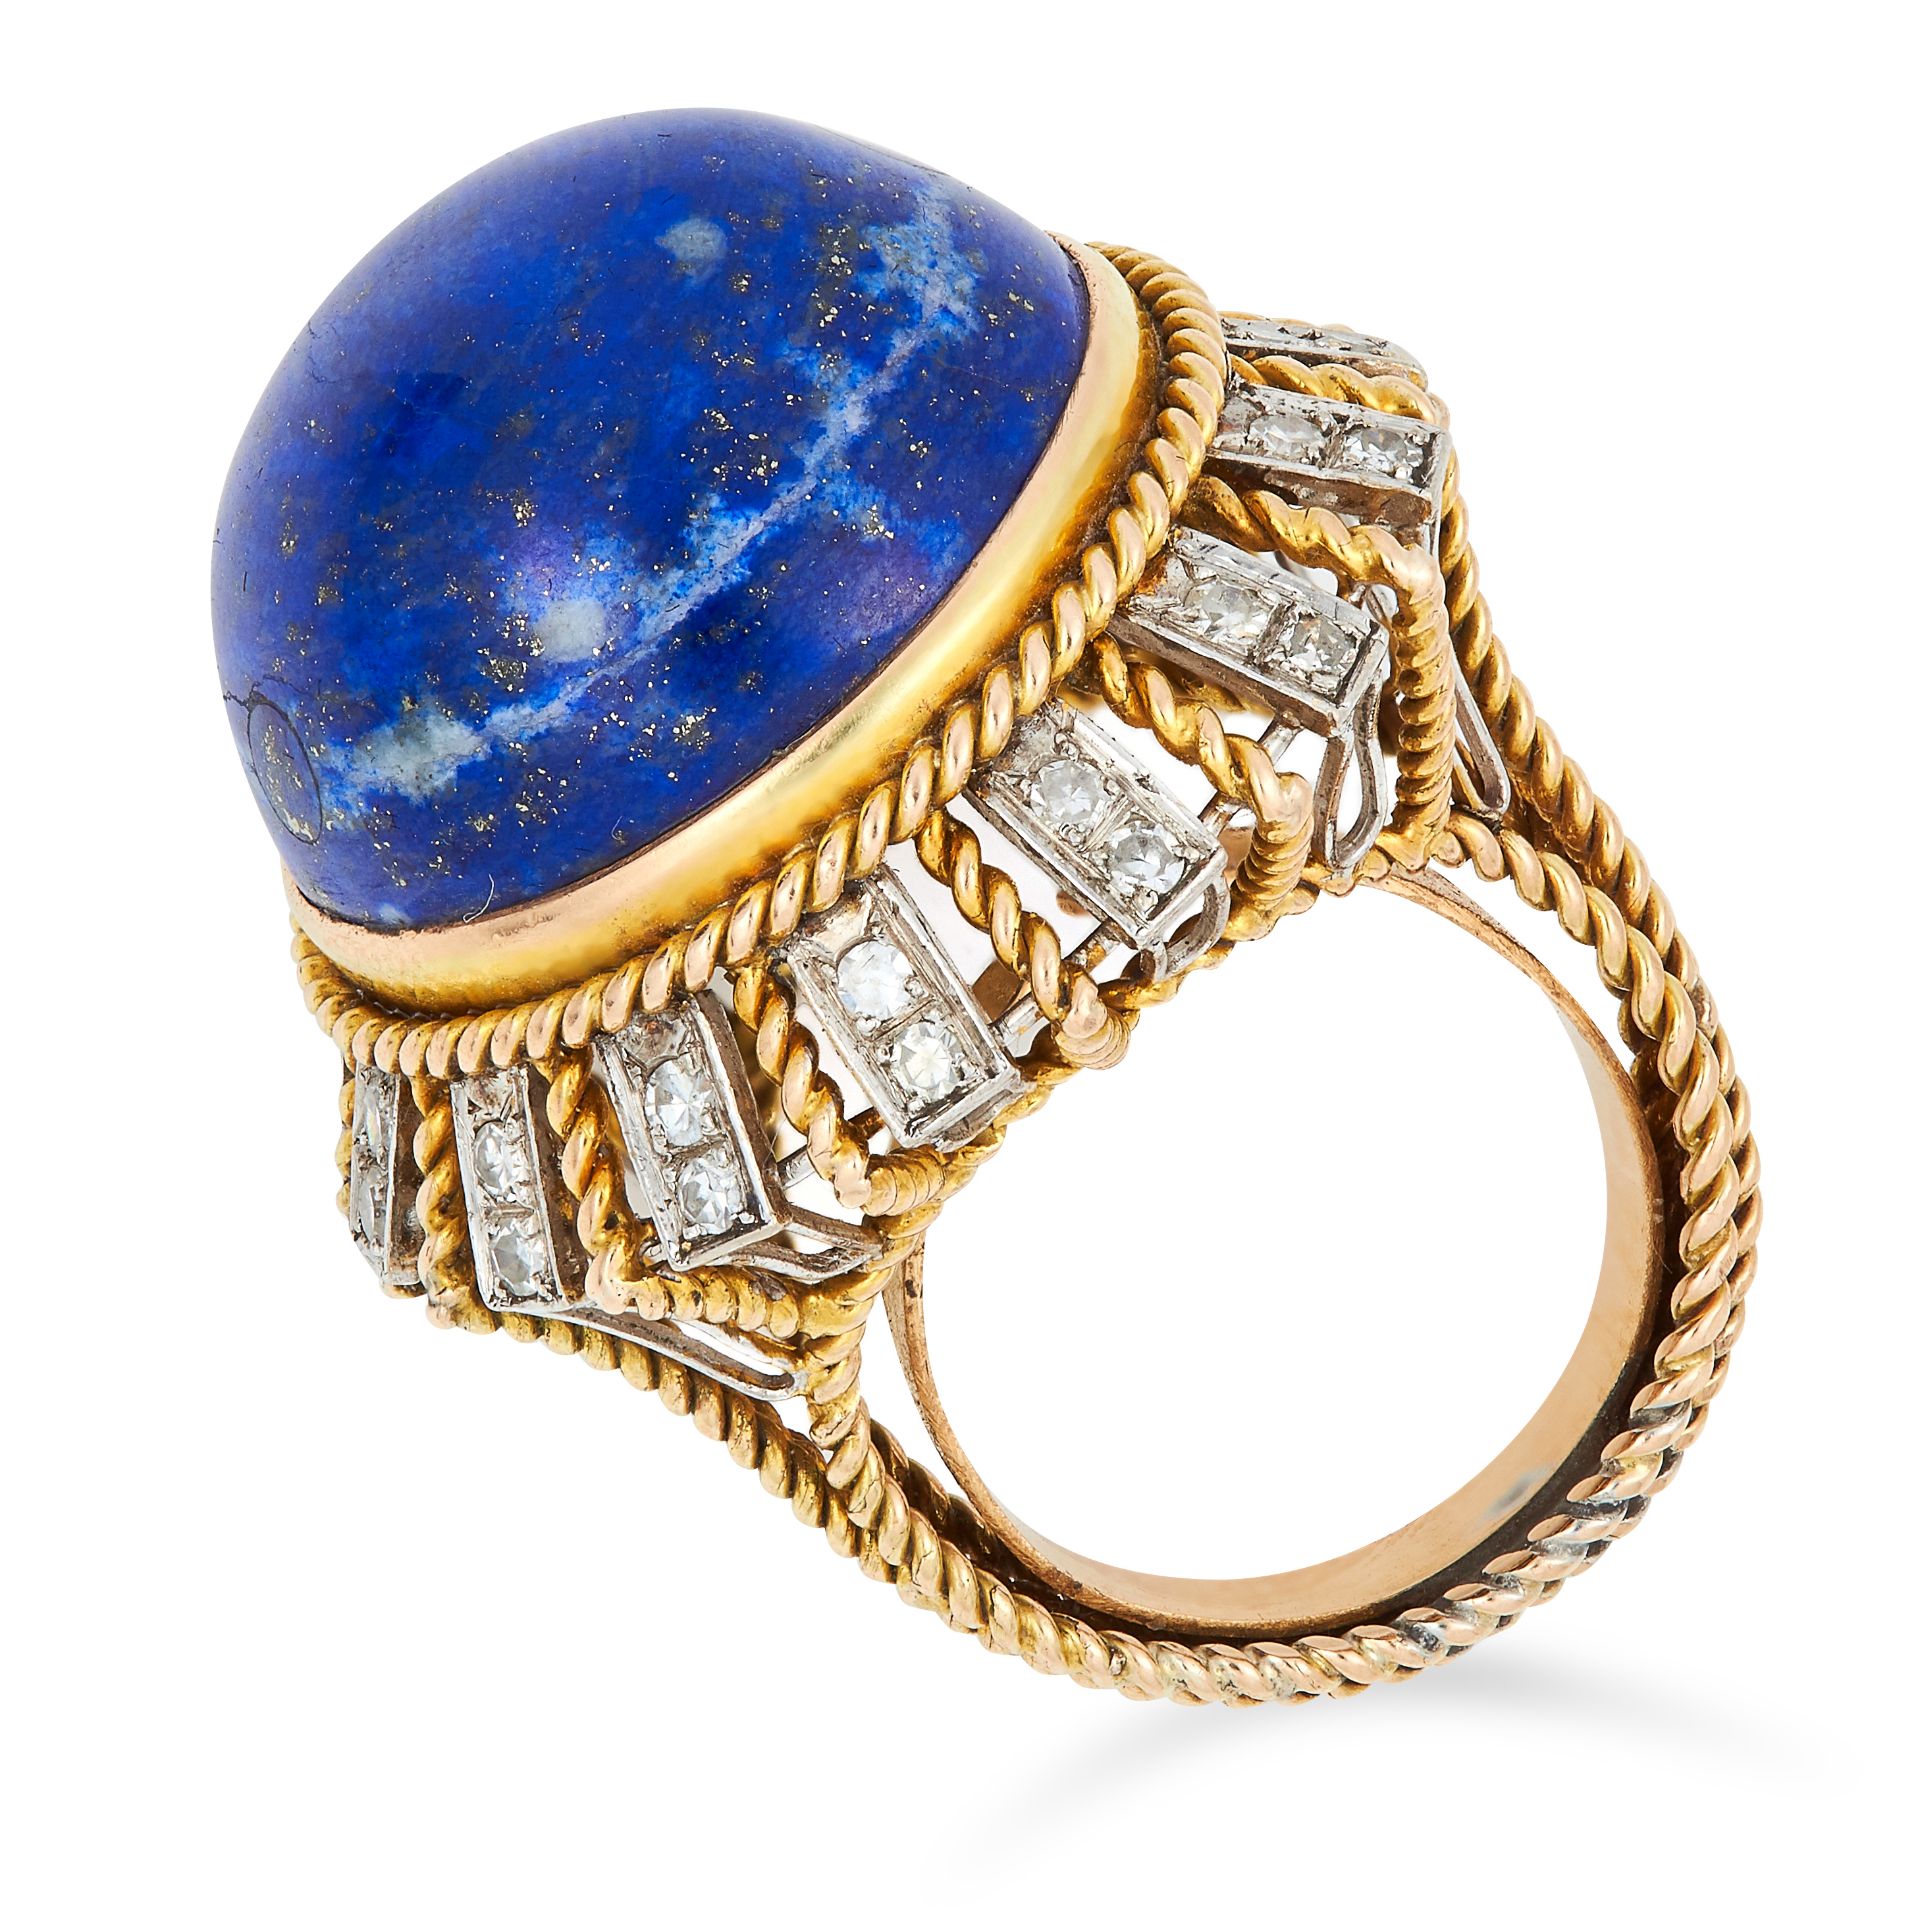 VINTAGE LAPIS LAZULI AND DIAMOND RING set with a circular lapis lazuli cabochon of 29.69 carats - Bild 2 aus 2